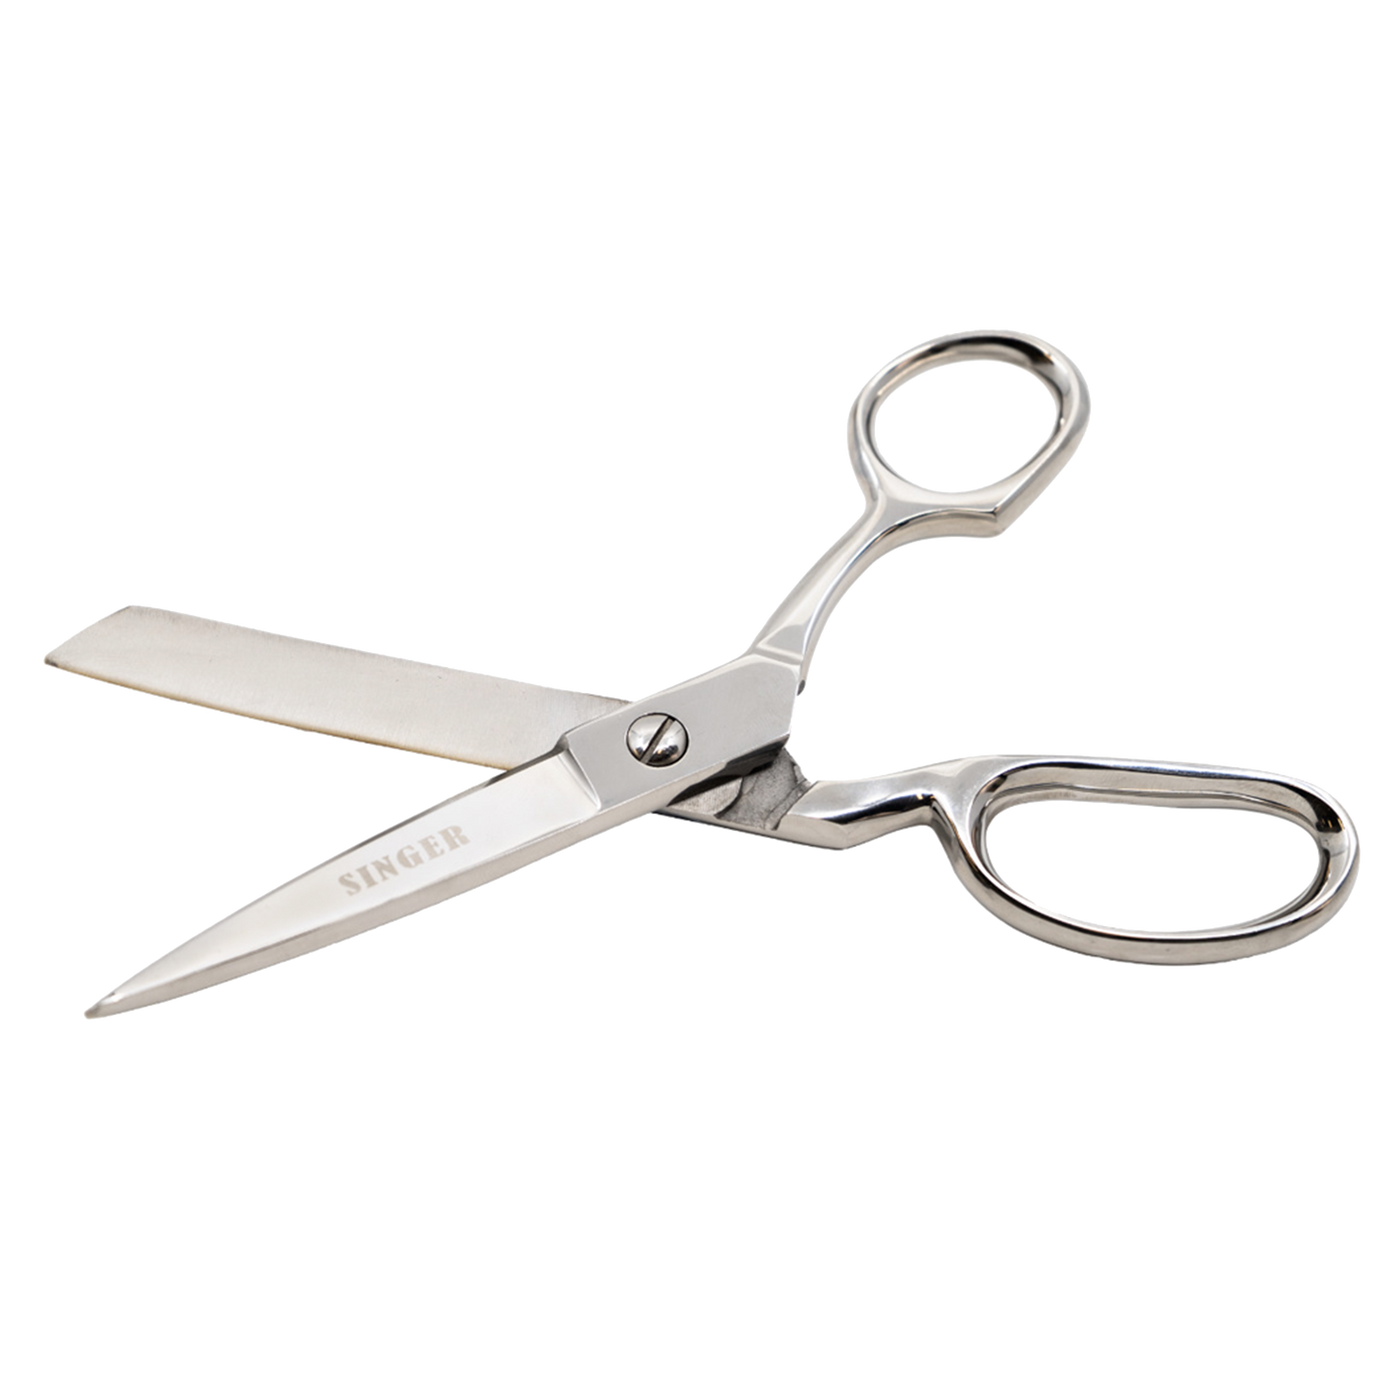 8 Bent Shear Scissors : SINGER®